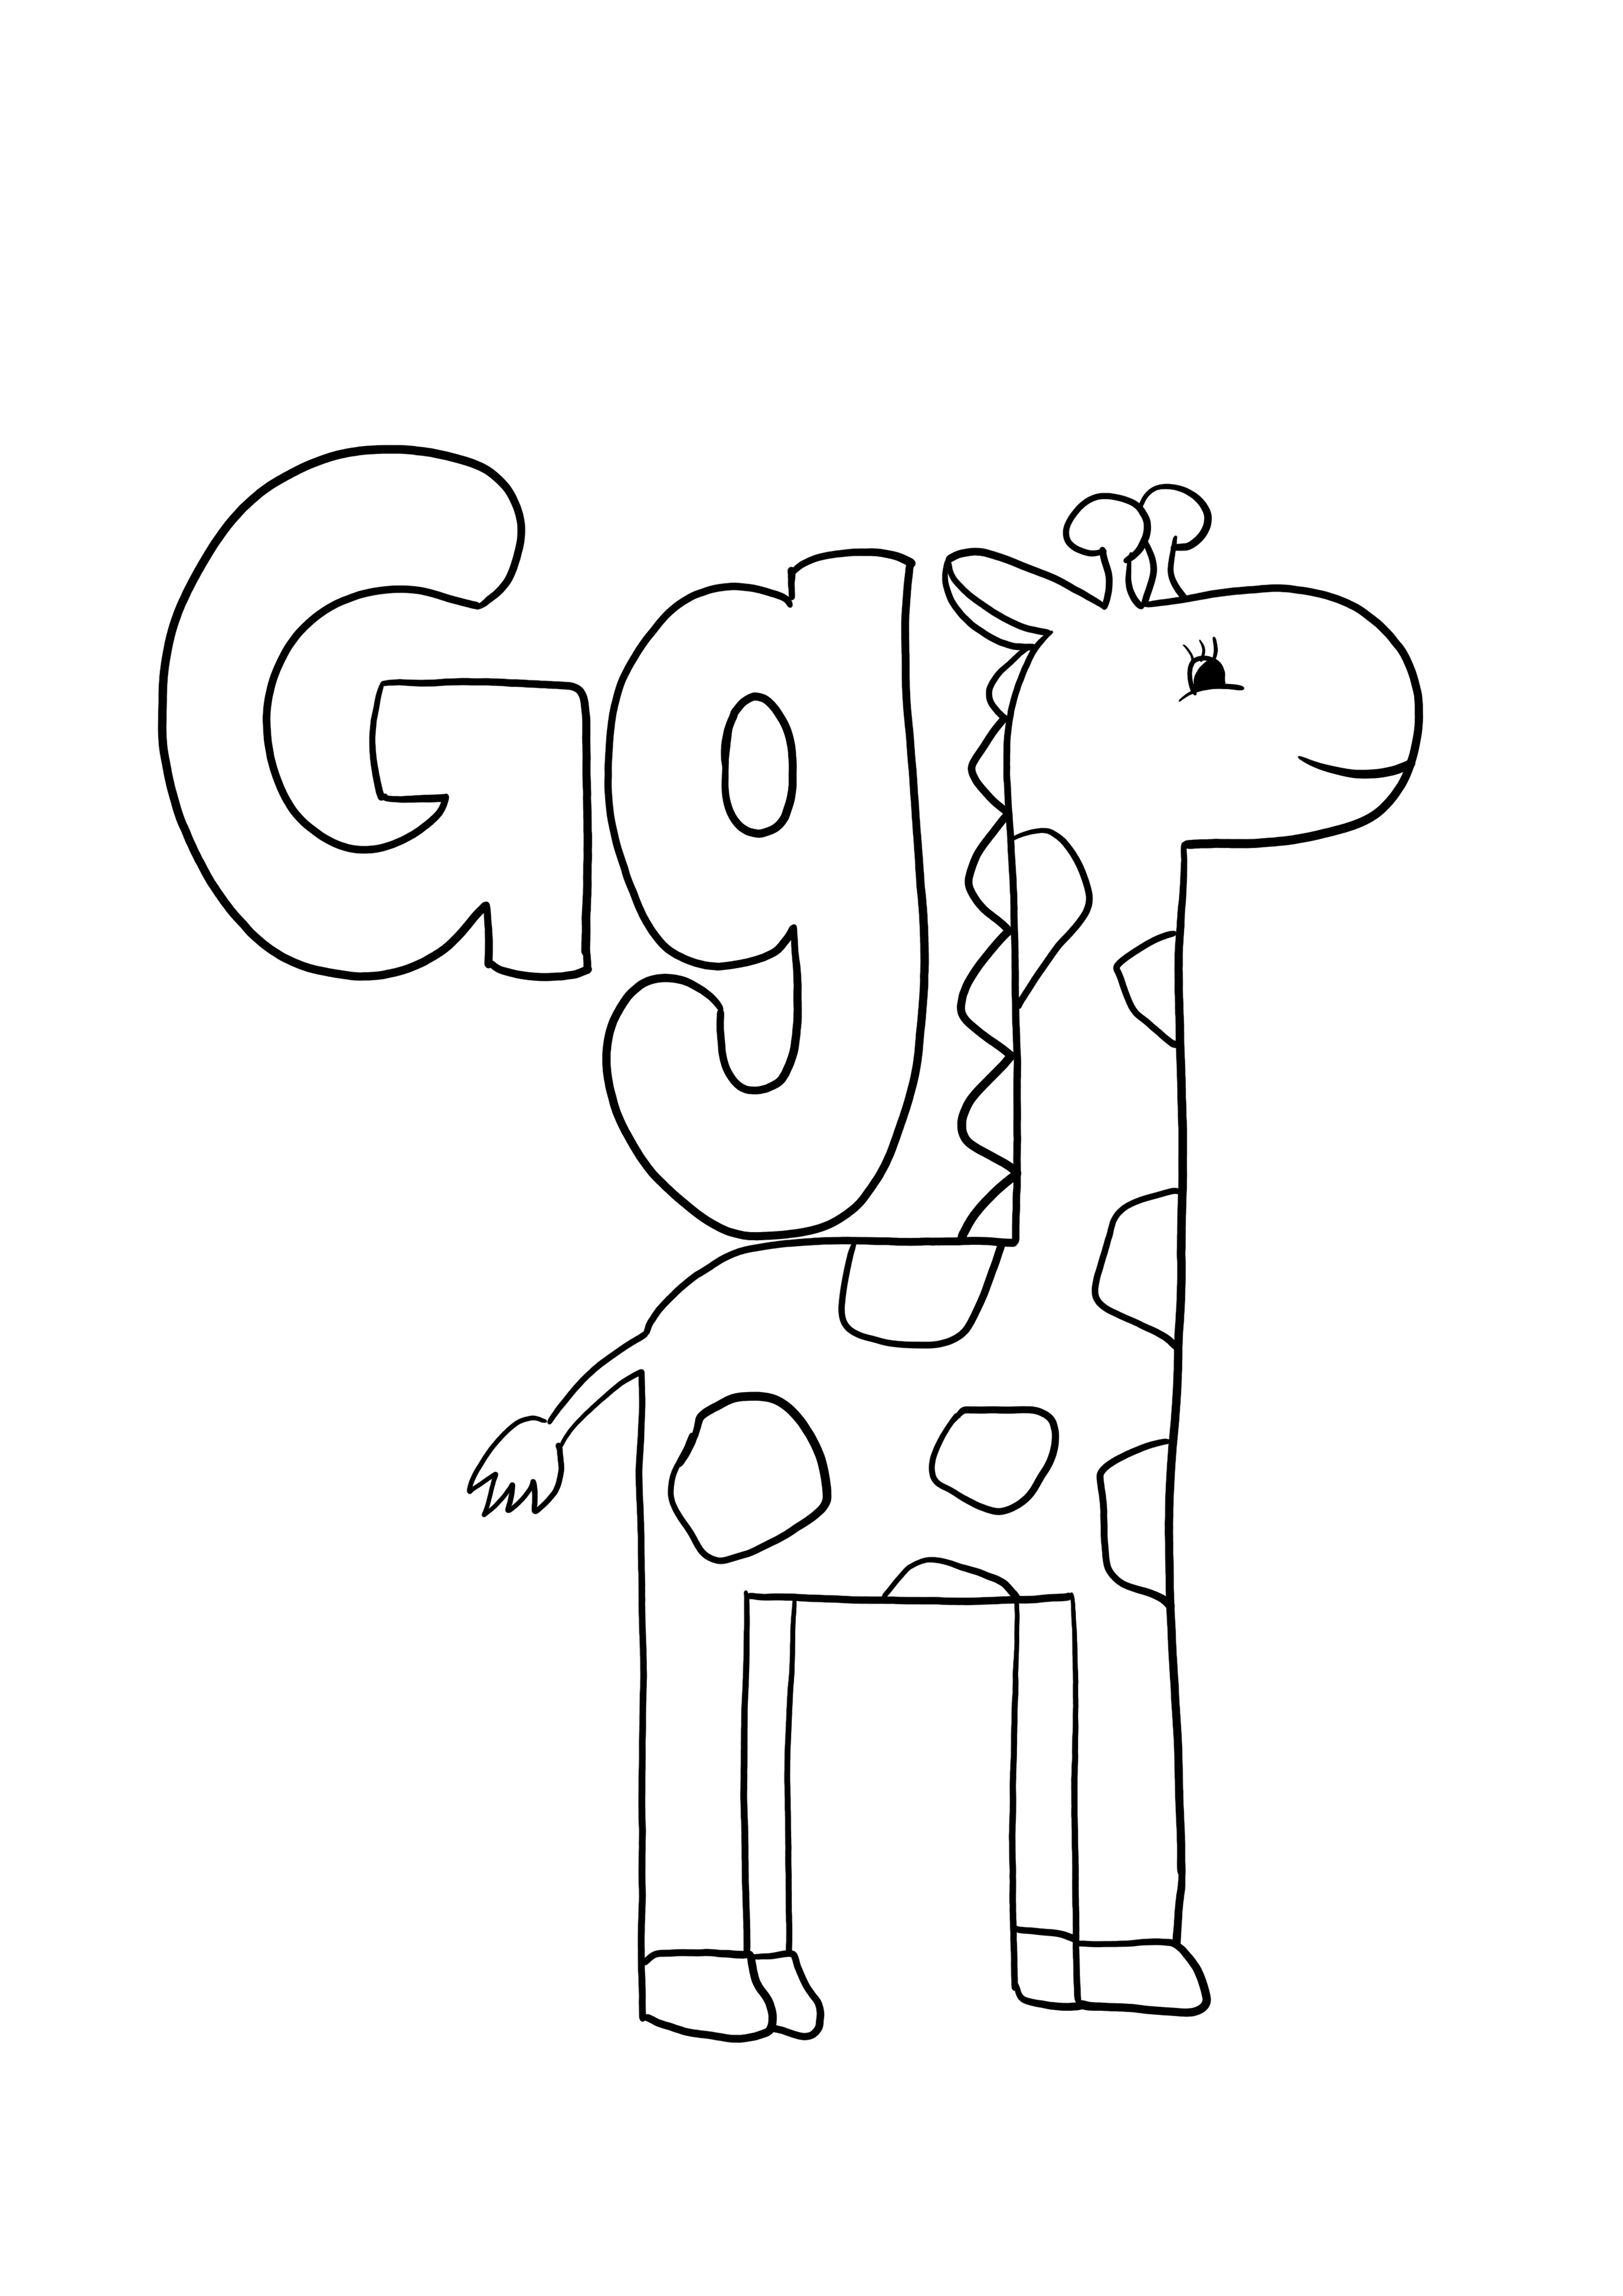 G è per la stampa della giraffa per un'immagine gratuita